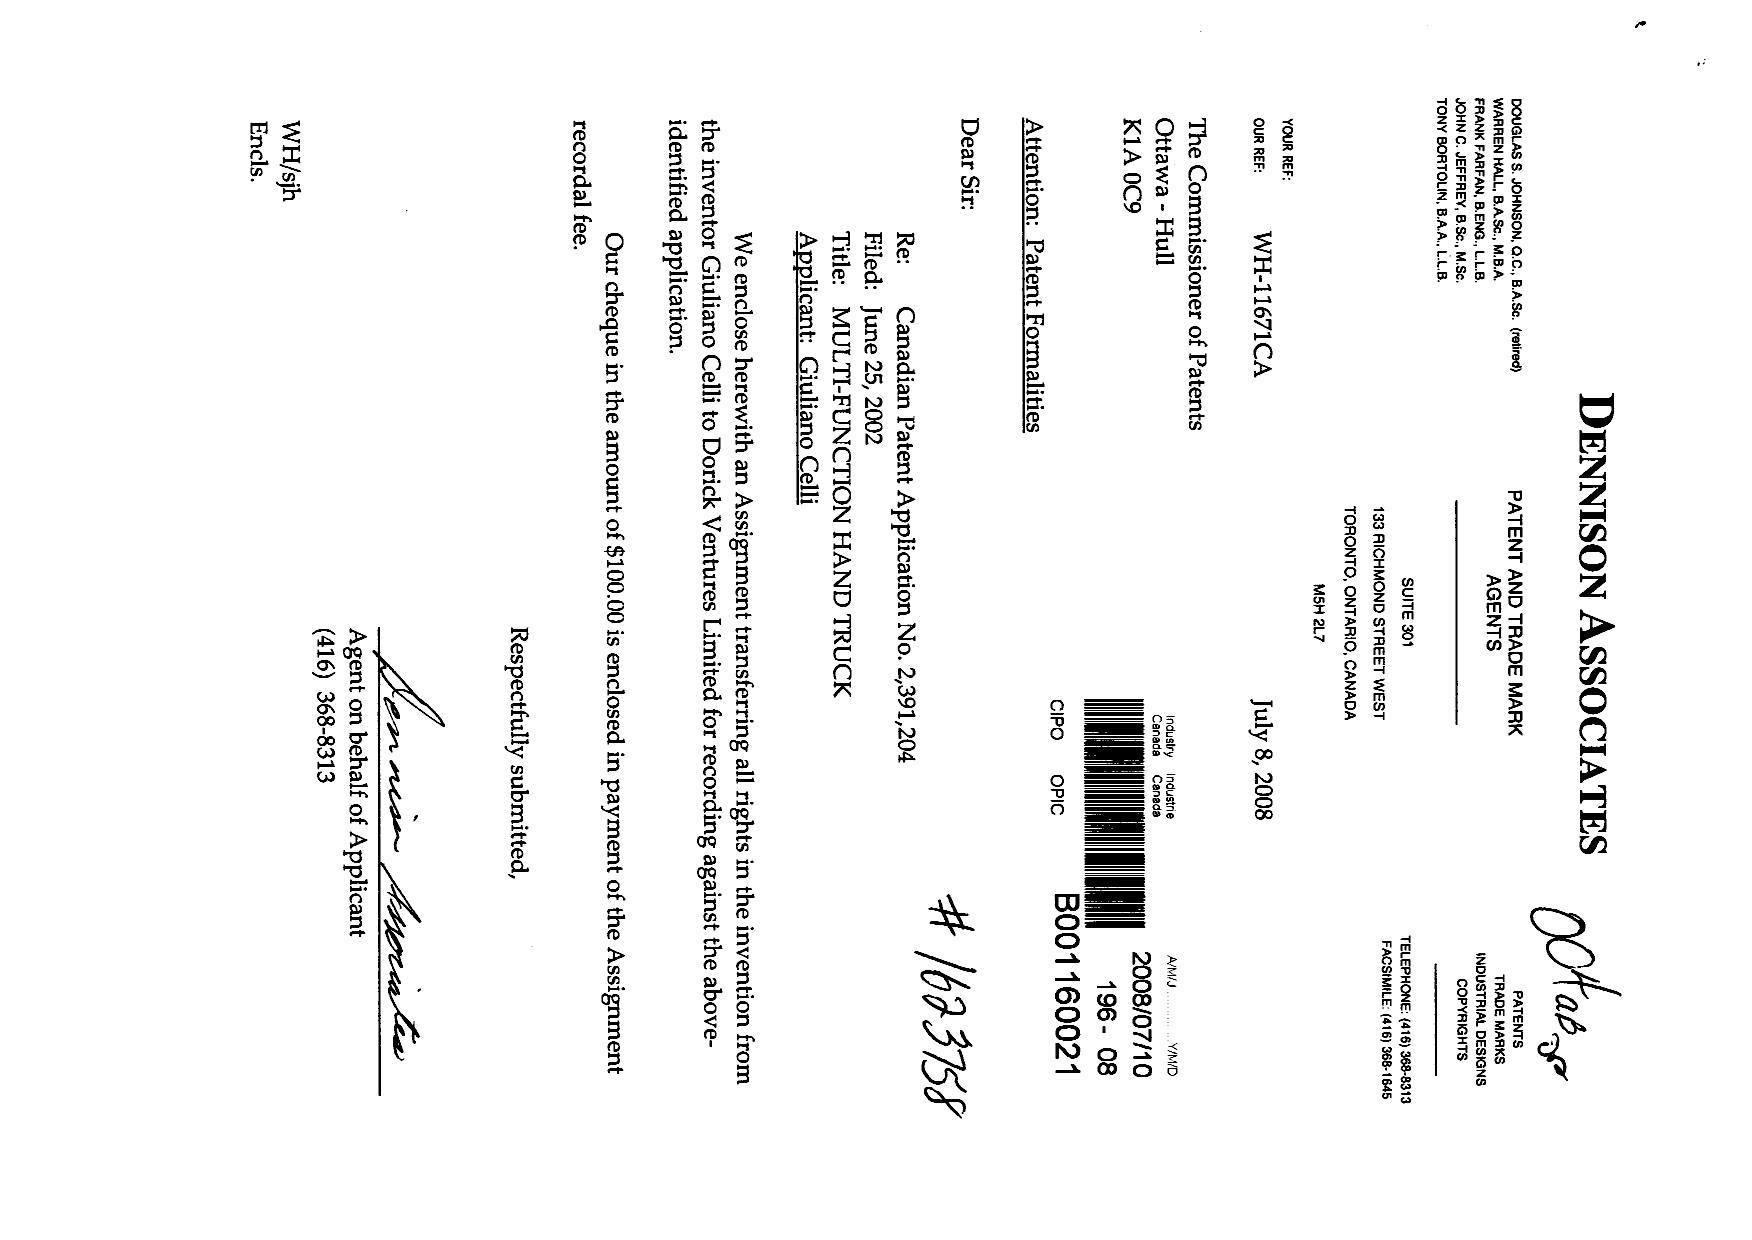 Document de brevet canadien 2391204. Cession 20080710. Image 1 de 3